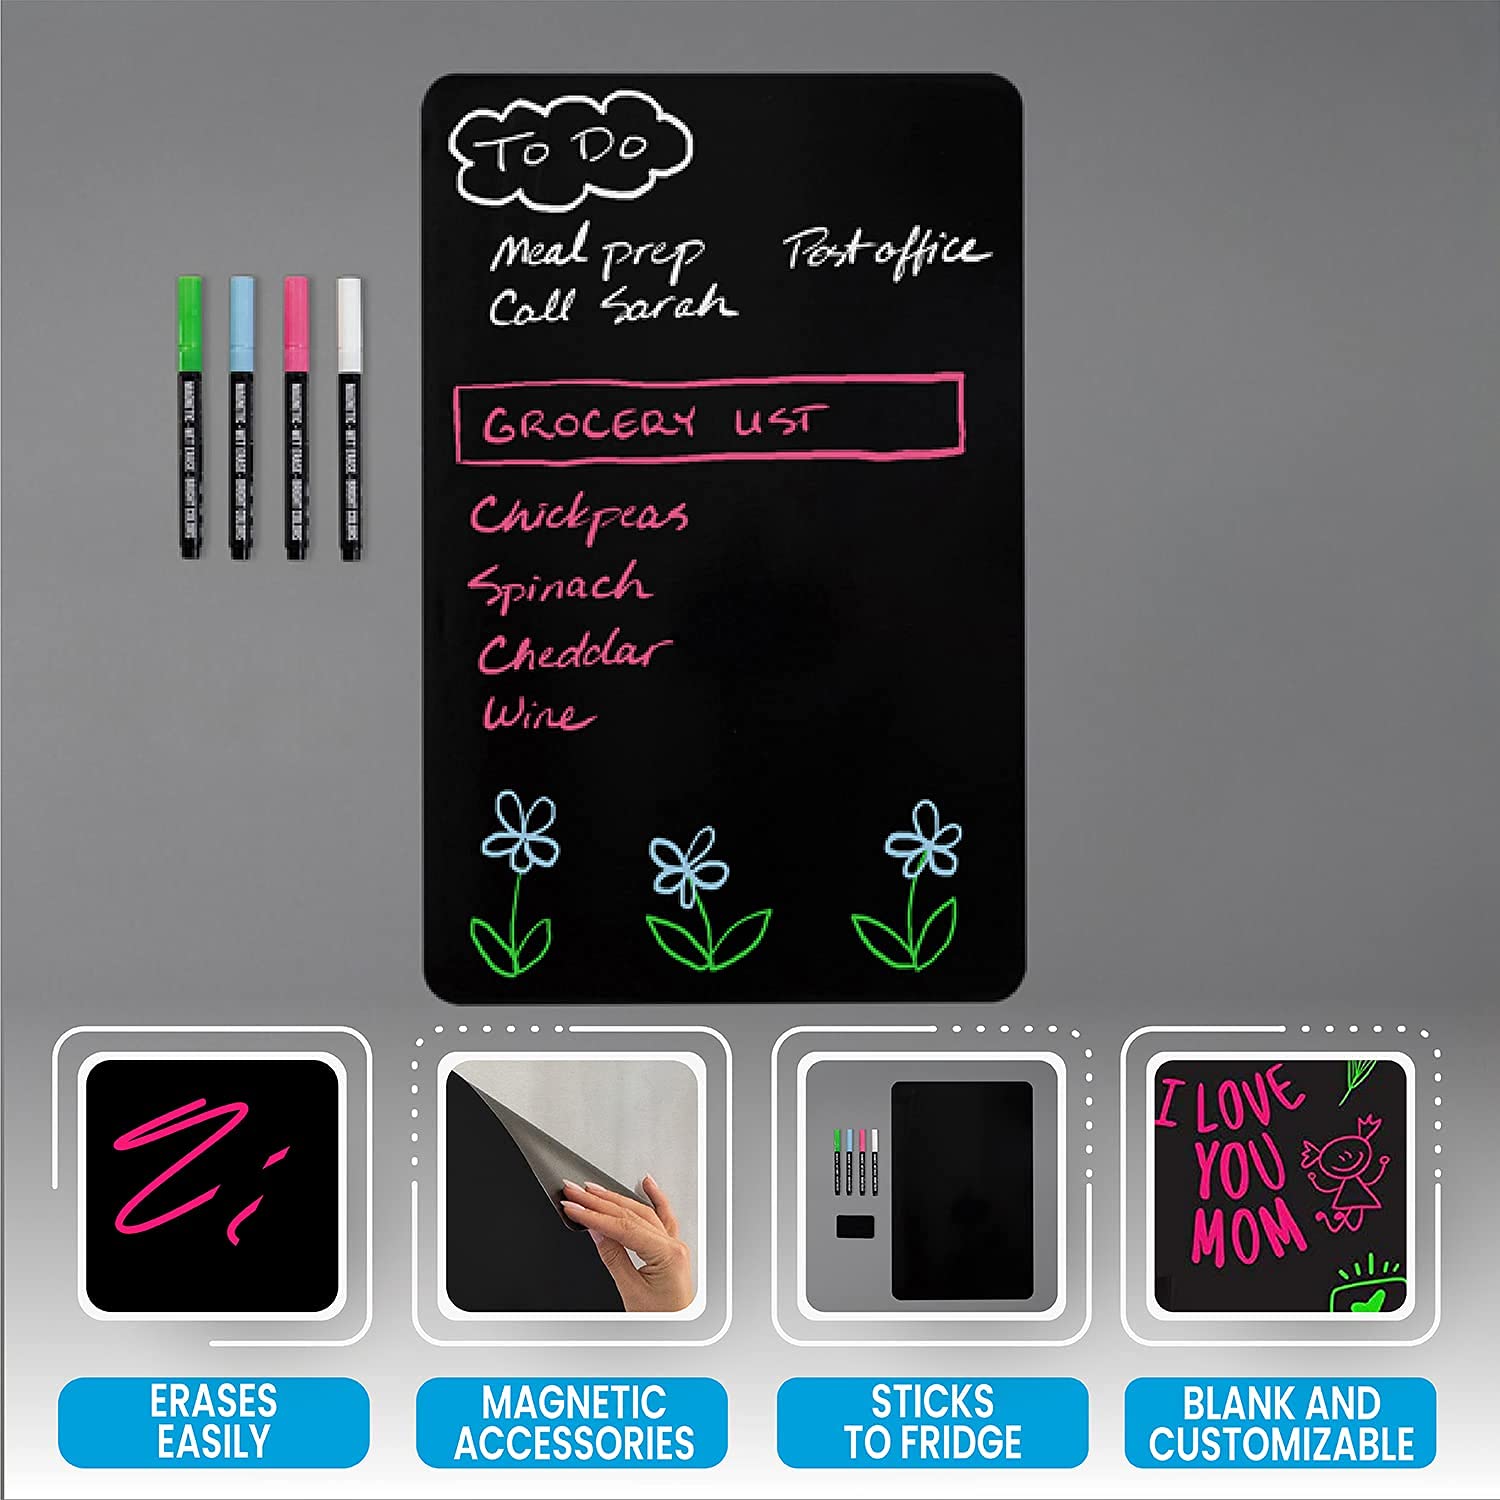 Magnetic Black Dry Erase Board for Fridge, Black  - Like New